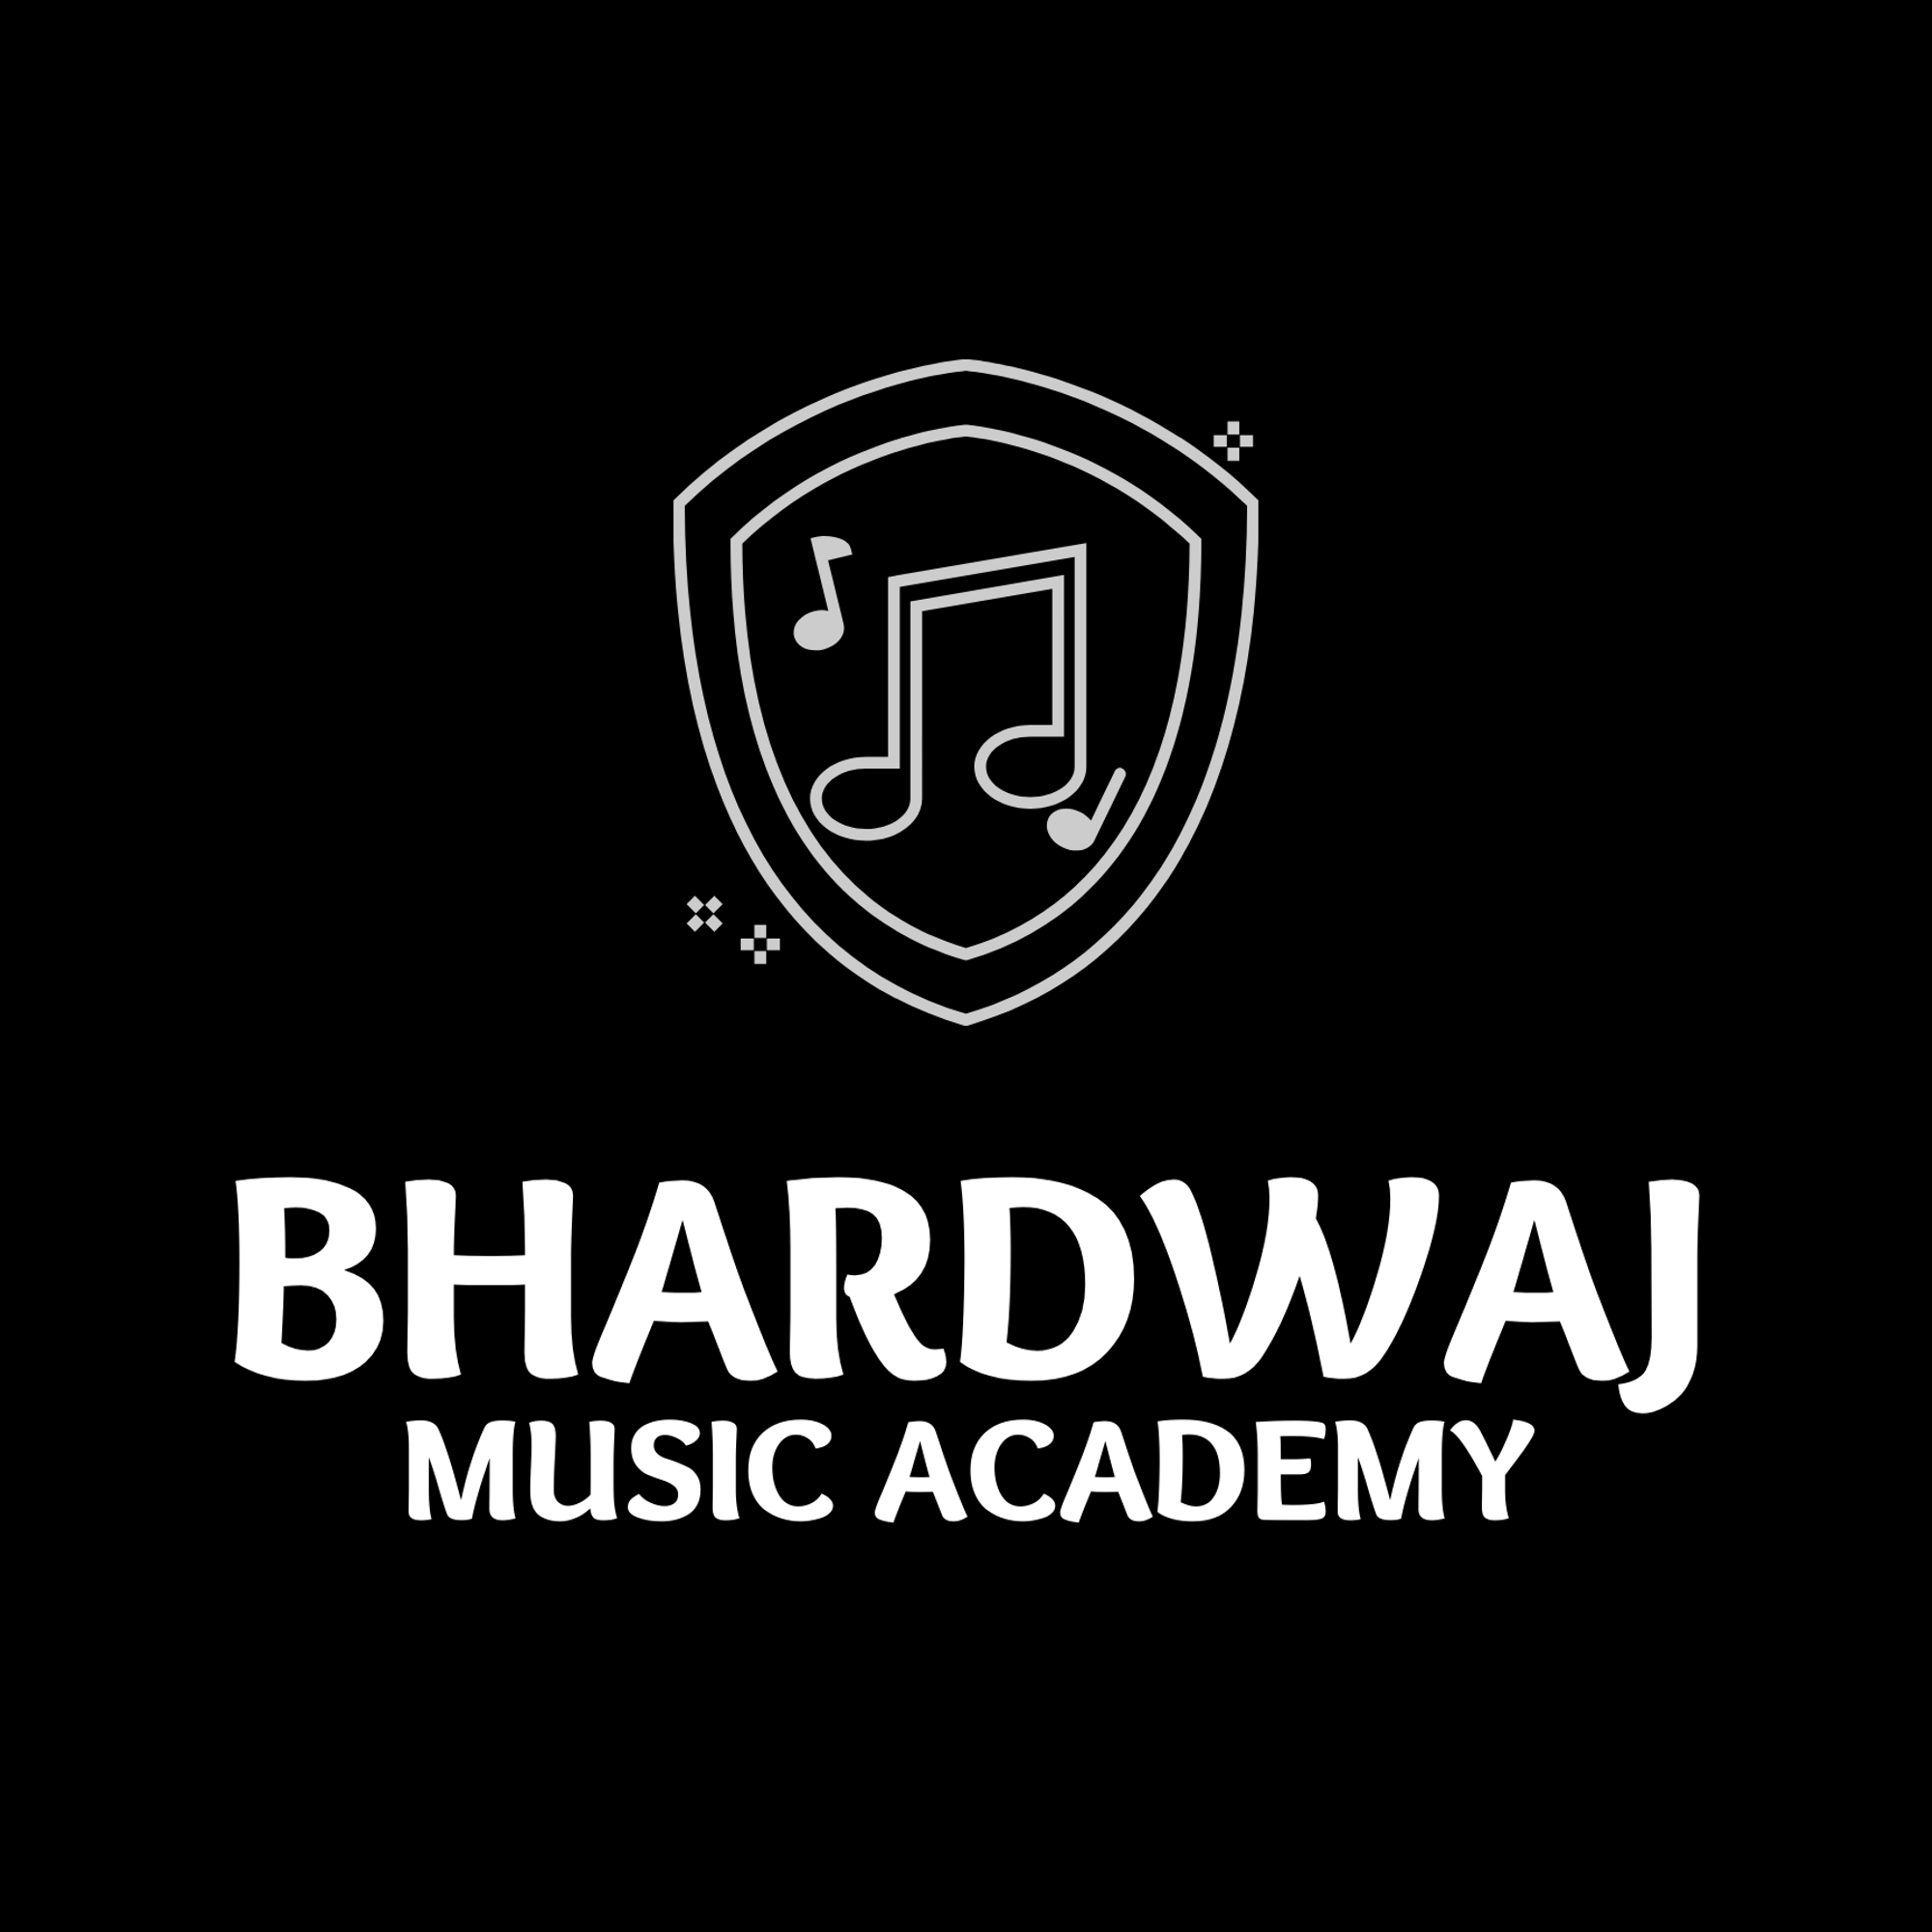 Bhardwajmusic Academy